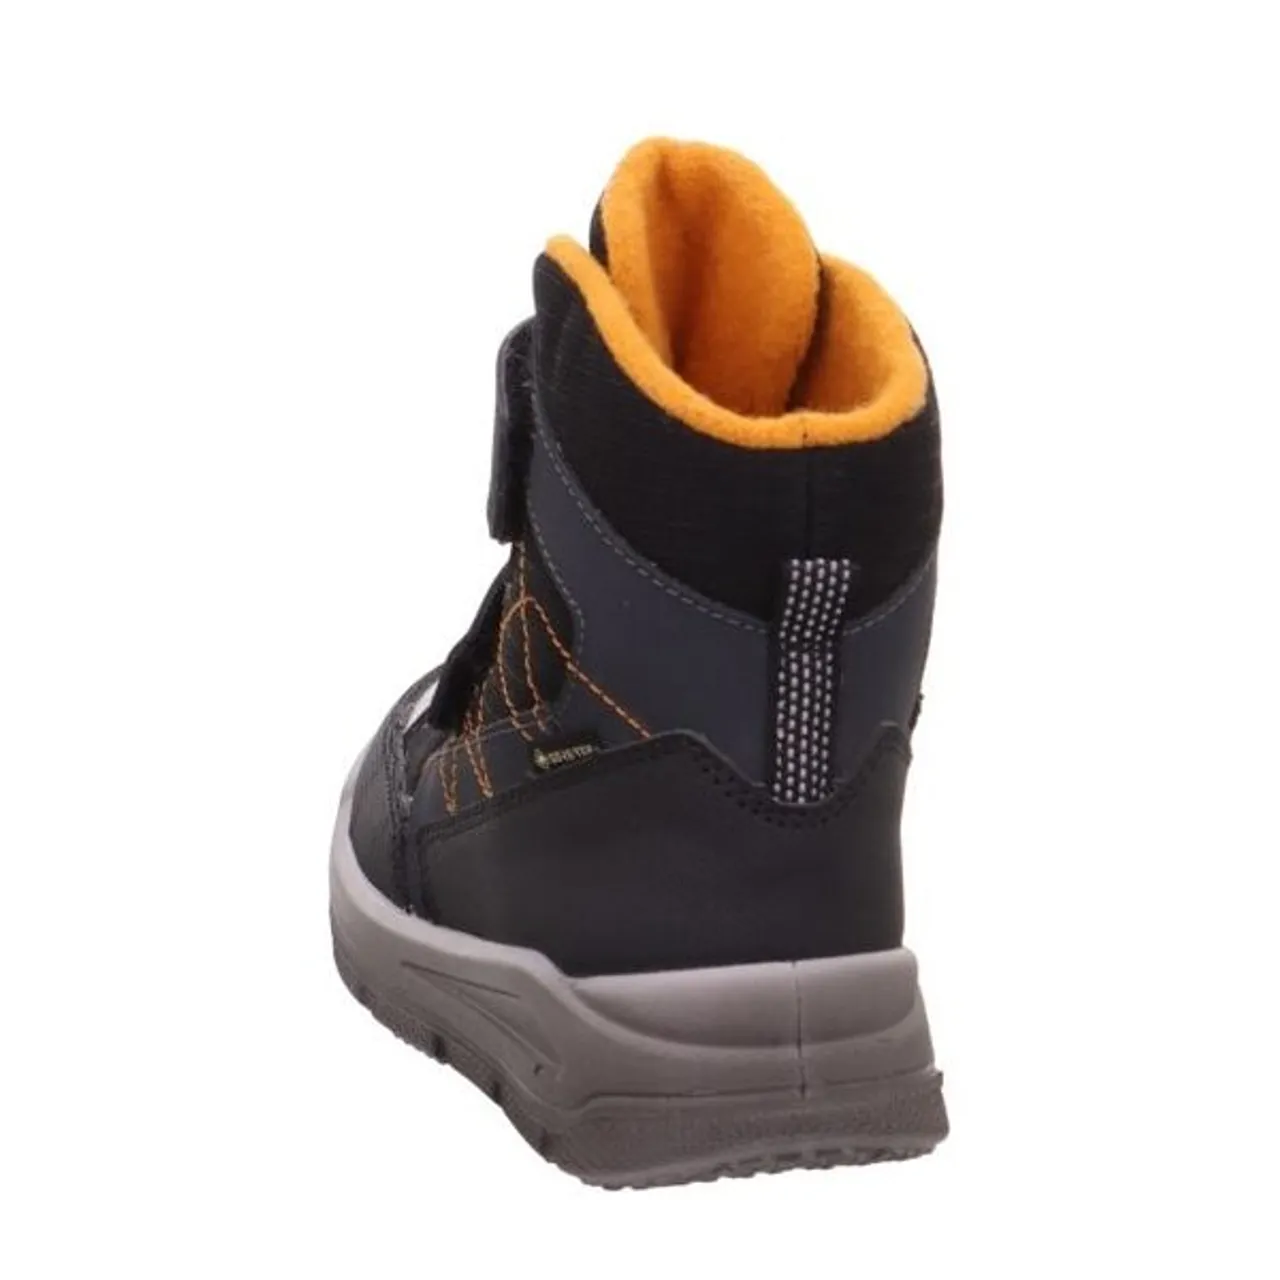 Winterboots SUPERFIT "MARS WMS: Mittel" Gr. 28, orange (schwarz, orange) Kinder Schuhe Stiefel Boots